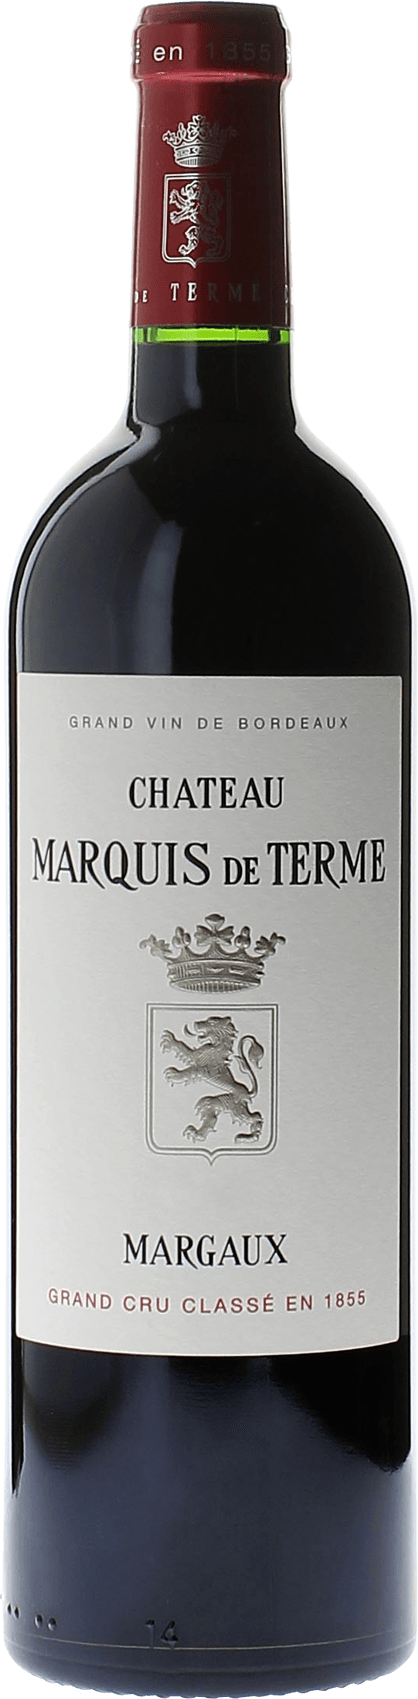 Marquis de terme 2014 4me Grand cru class Margaux, Bordeaux rouge